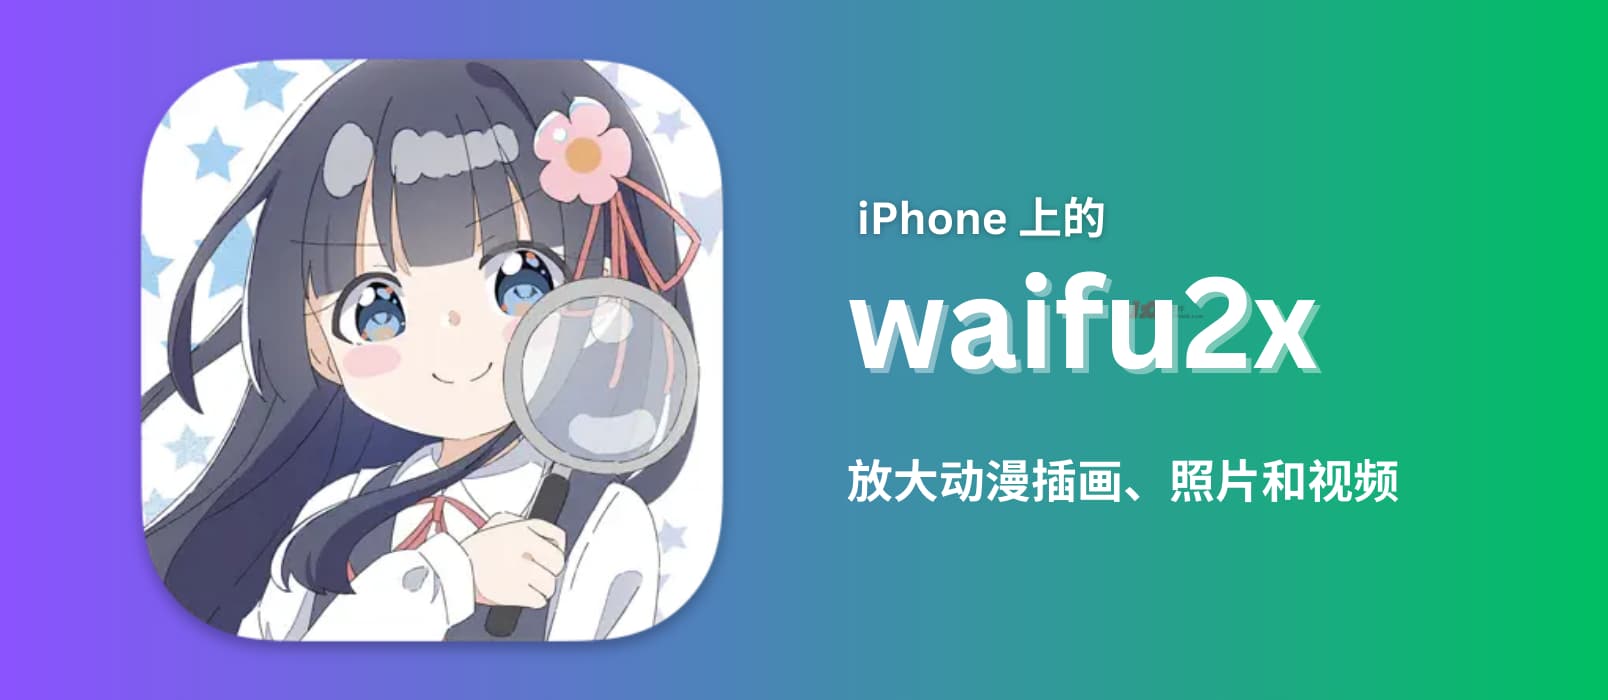 waifu2x – 改善图片和视频画质：iPhone、iPad、Mac 版本